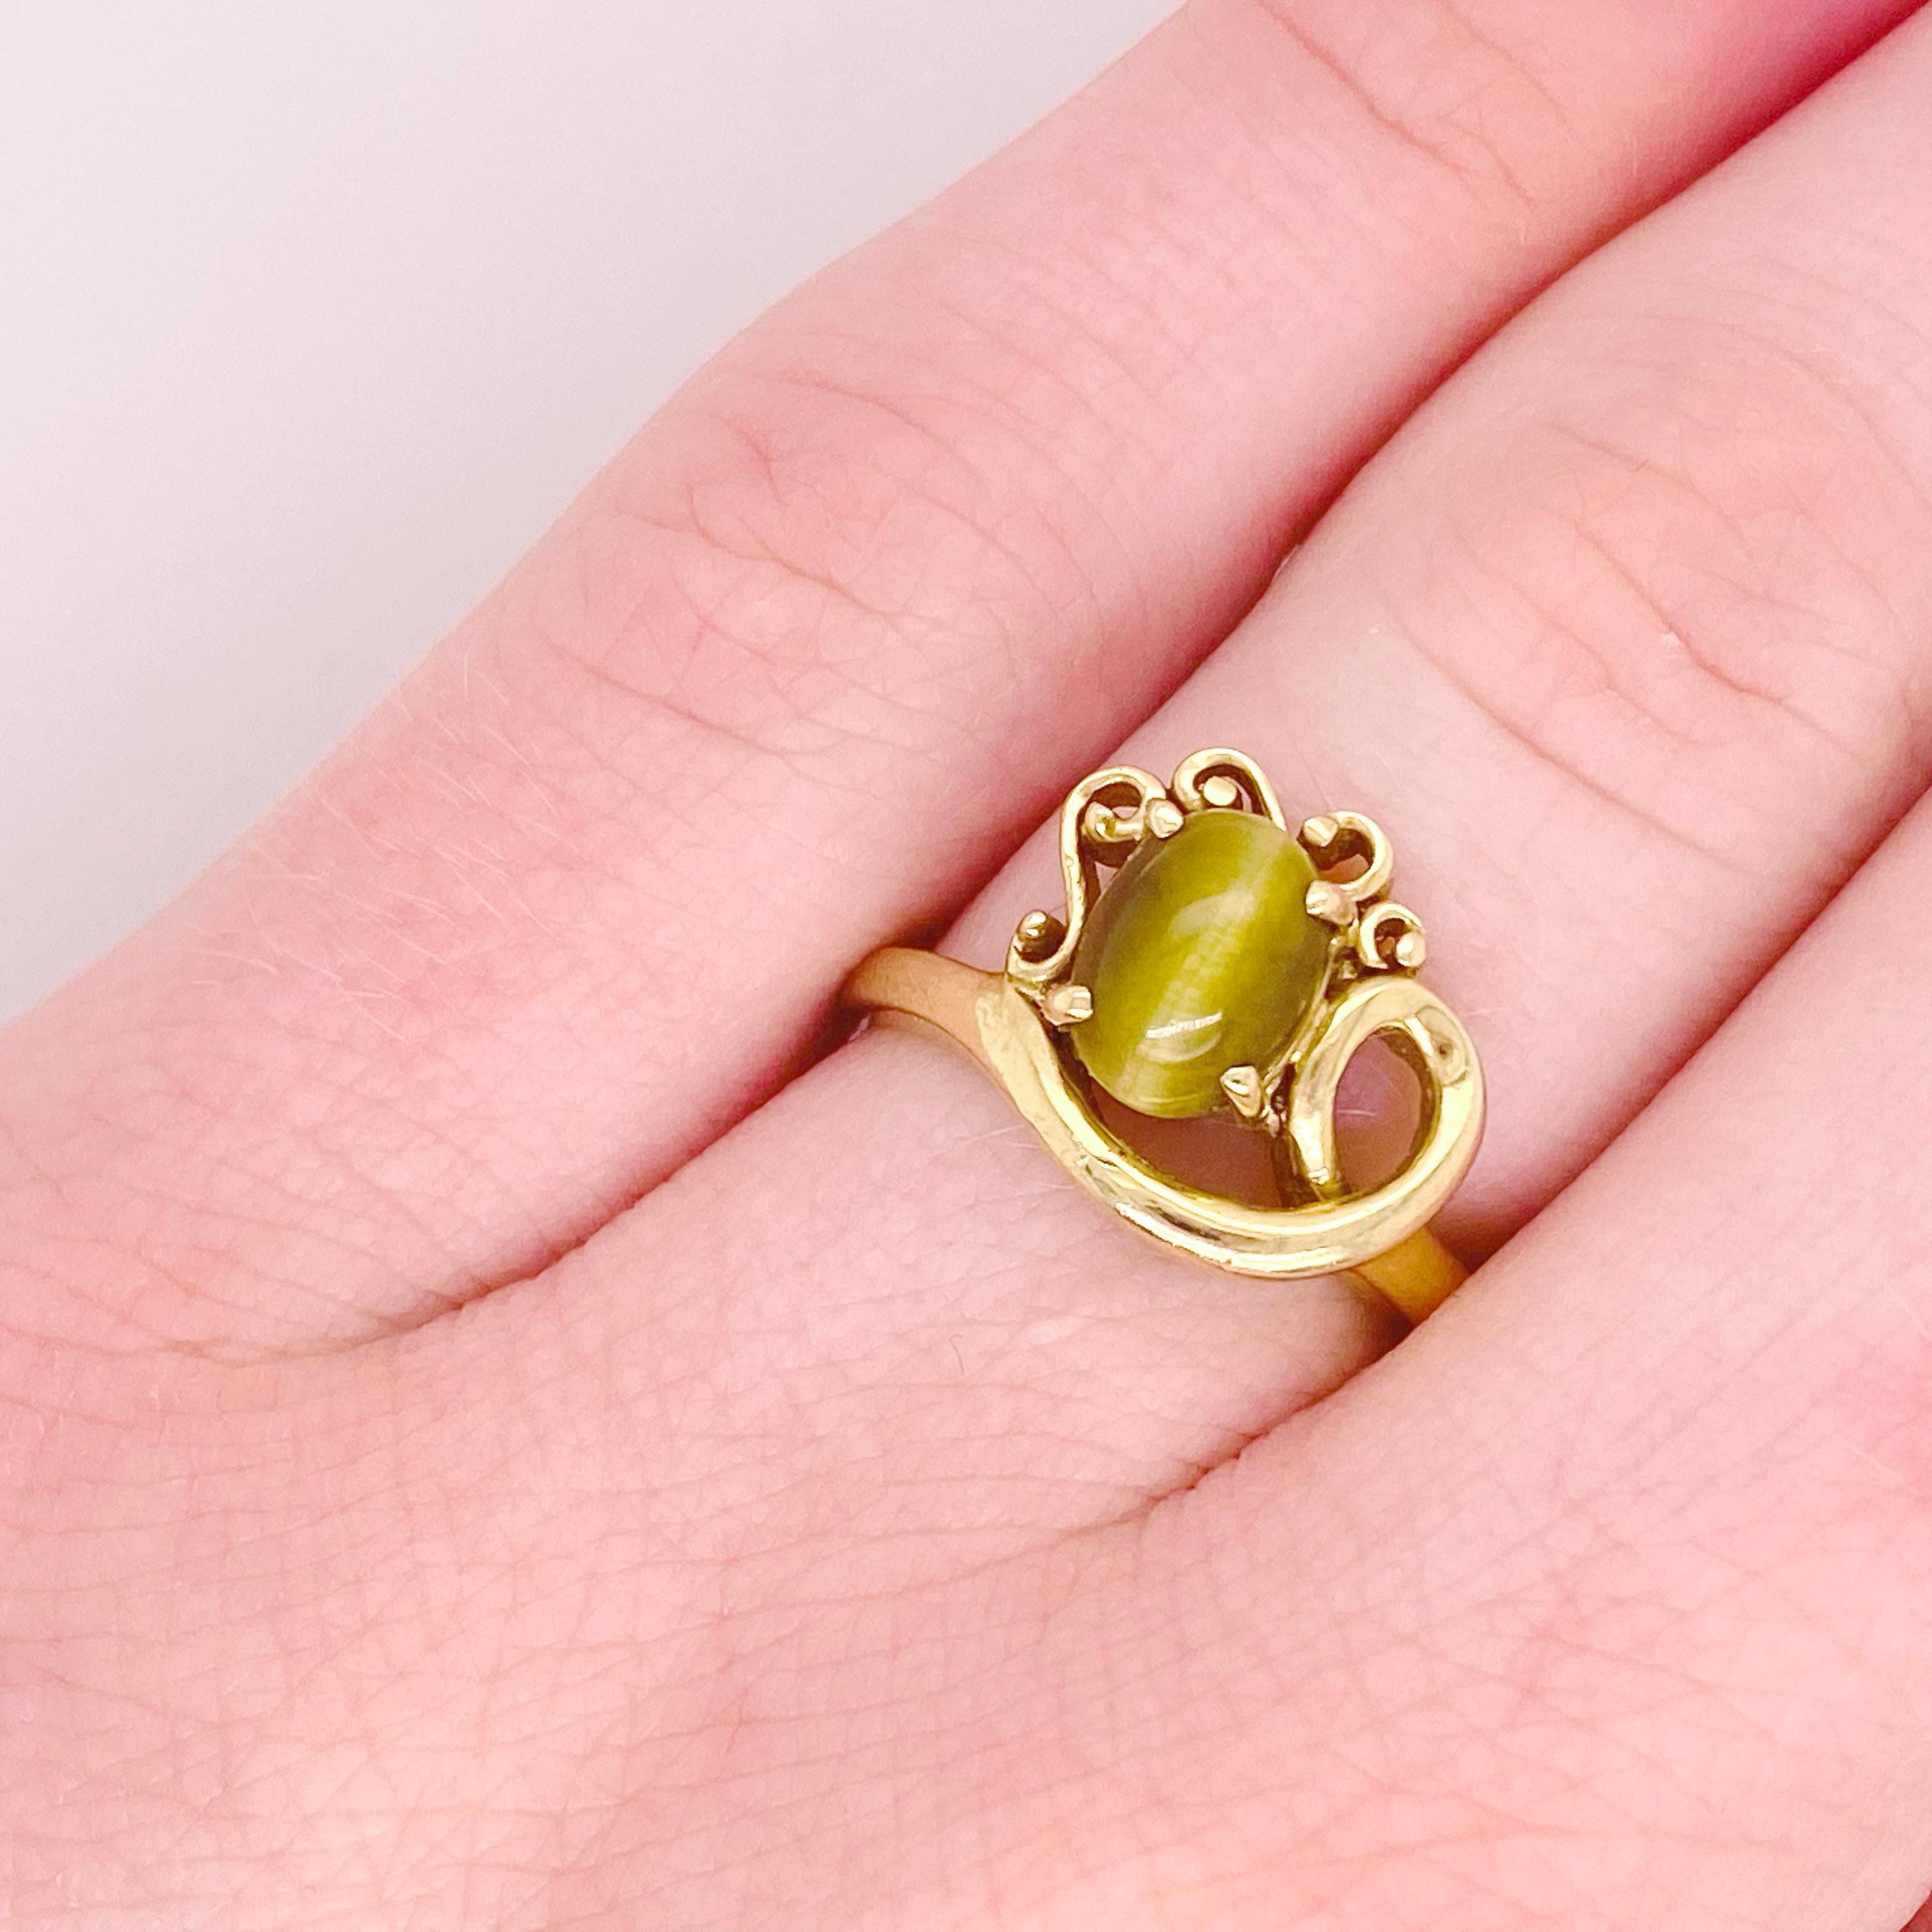 Dieser Ring aus 14-karätigem Gelbgold hat einen honigfarbenen Tigerauge-Edelstein, der Ihnen bei jeder Bewegung Ihrer Hand zuzwinkert! Das asymmetrische Design ist bei allen Designern so beliebt und im Trend. Kaufen Sie diesen Nachlassring für ein